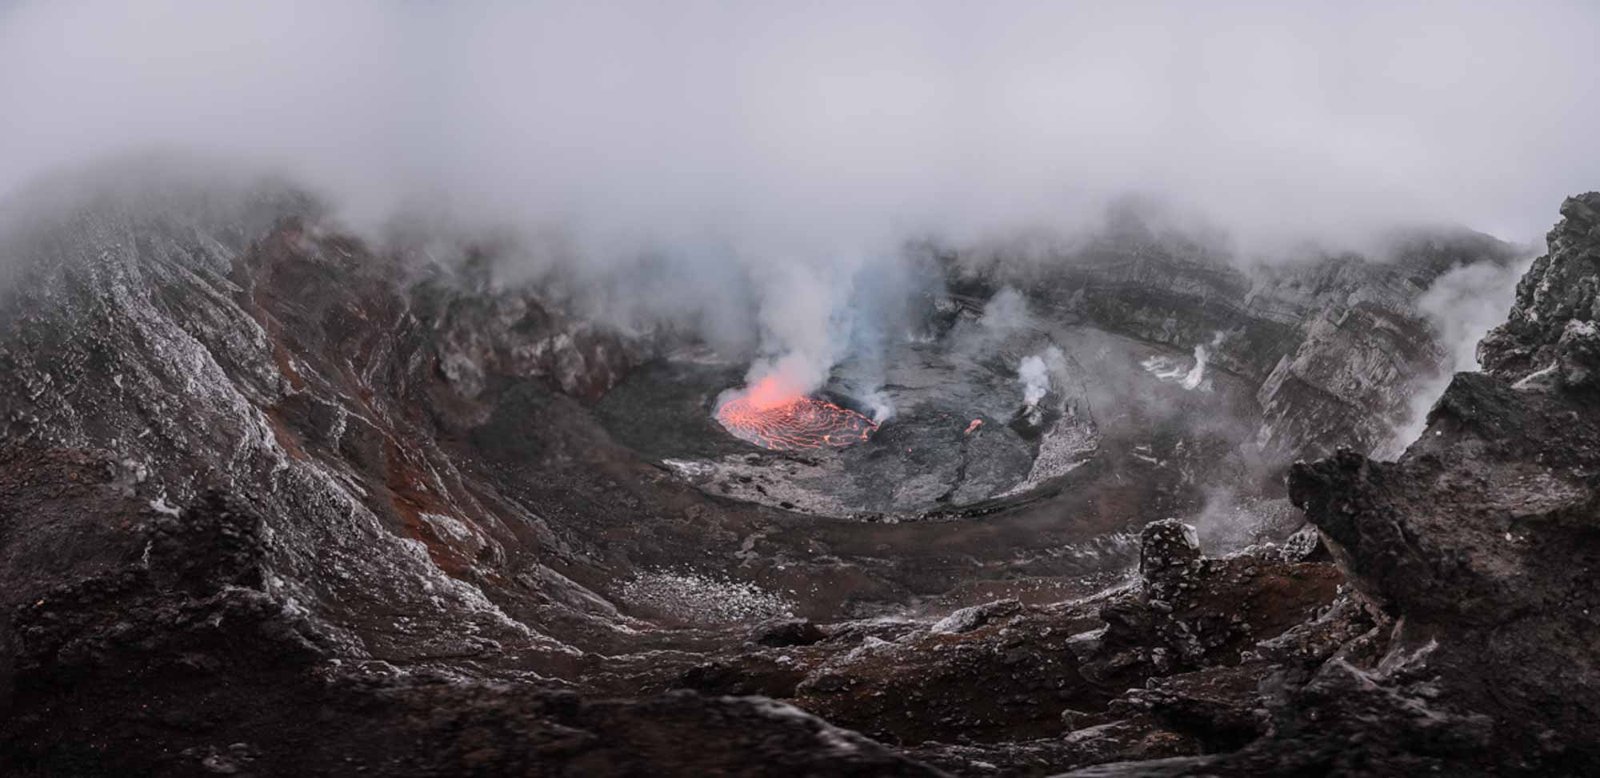 Congo Virunga Volcan Nyirangongo- Agencia de viajes Africaatumedida